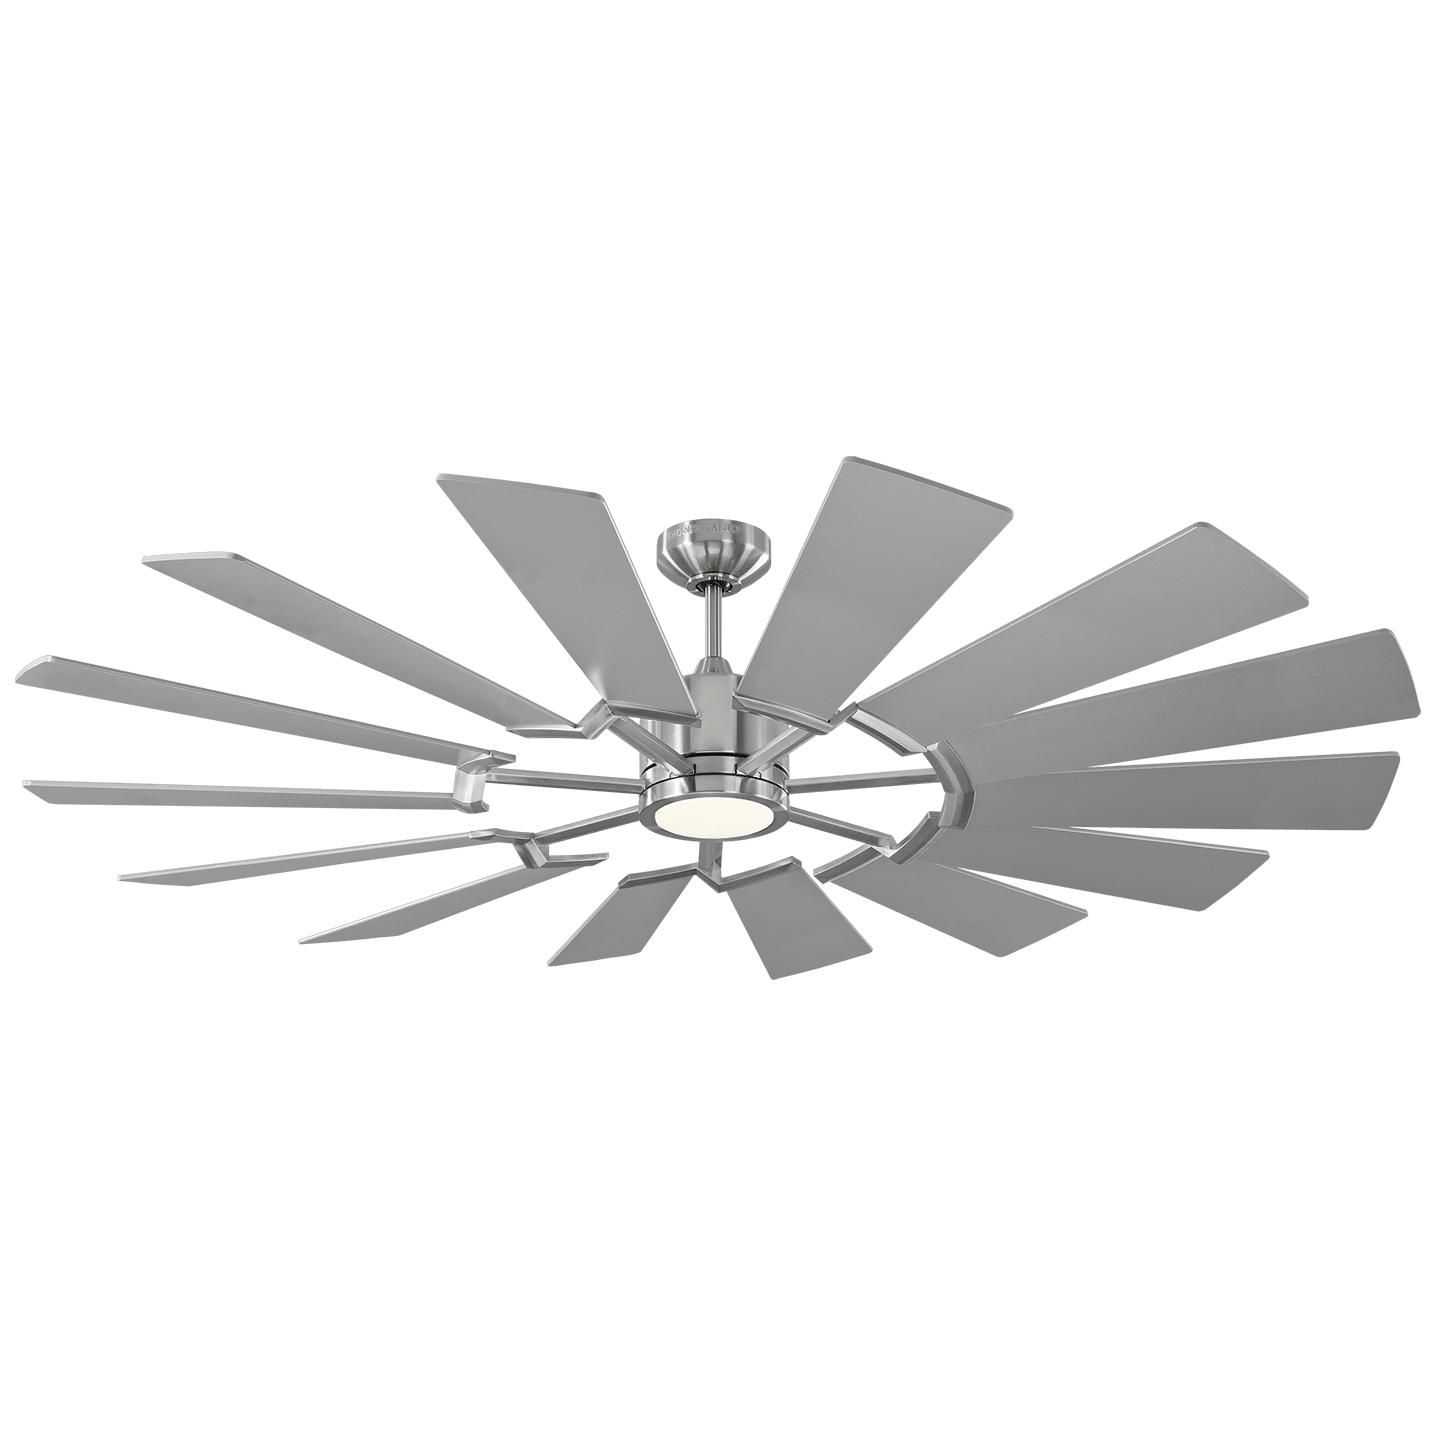 Купить Потолочный вентилятор Prairie 62" LED Ceiling Fan в интернет-магазине roooms.ru